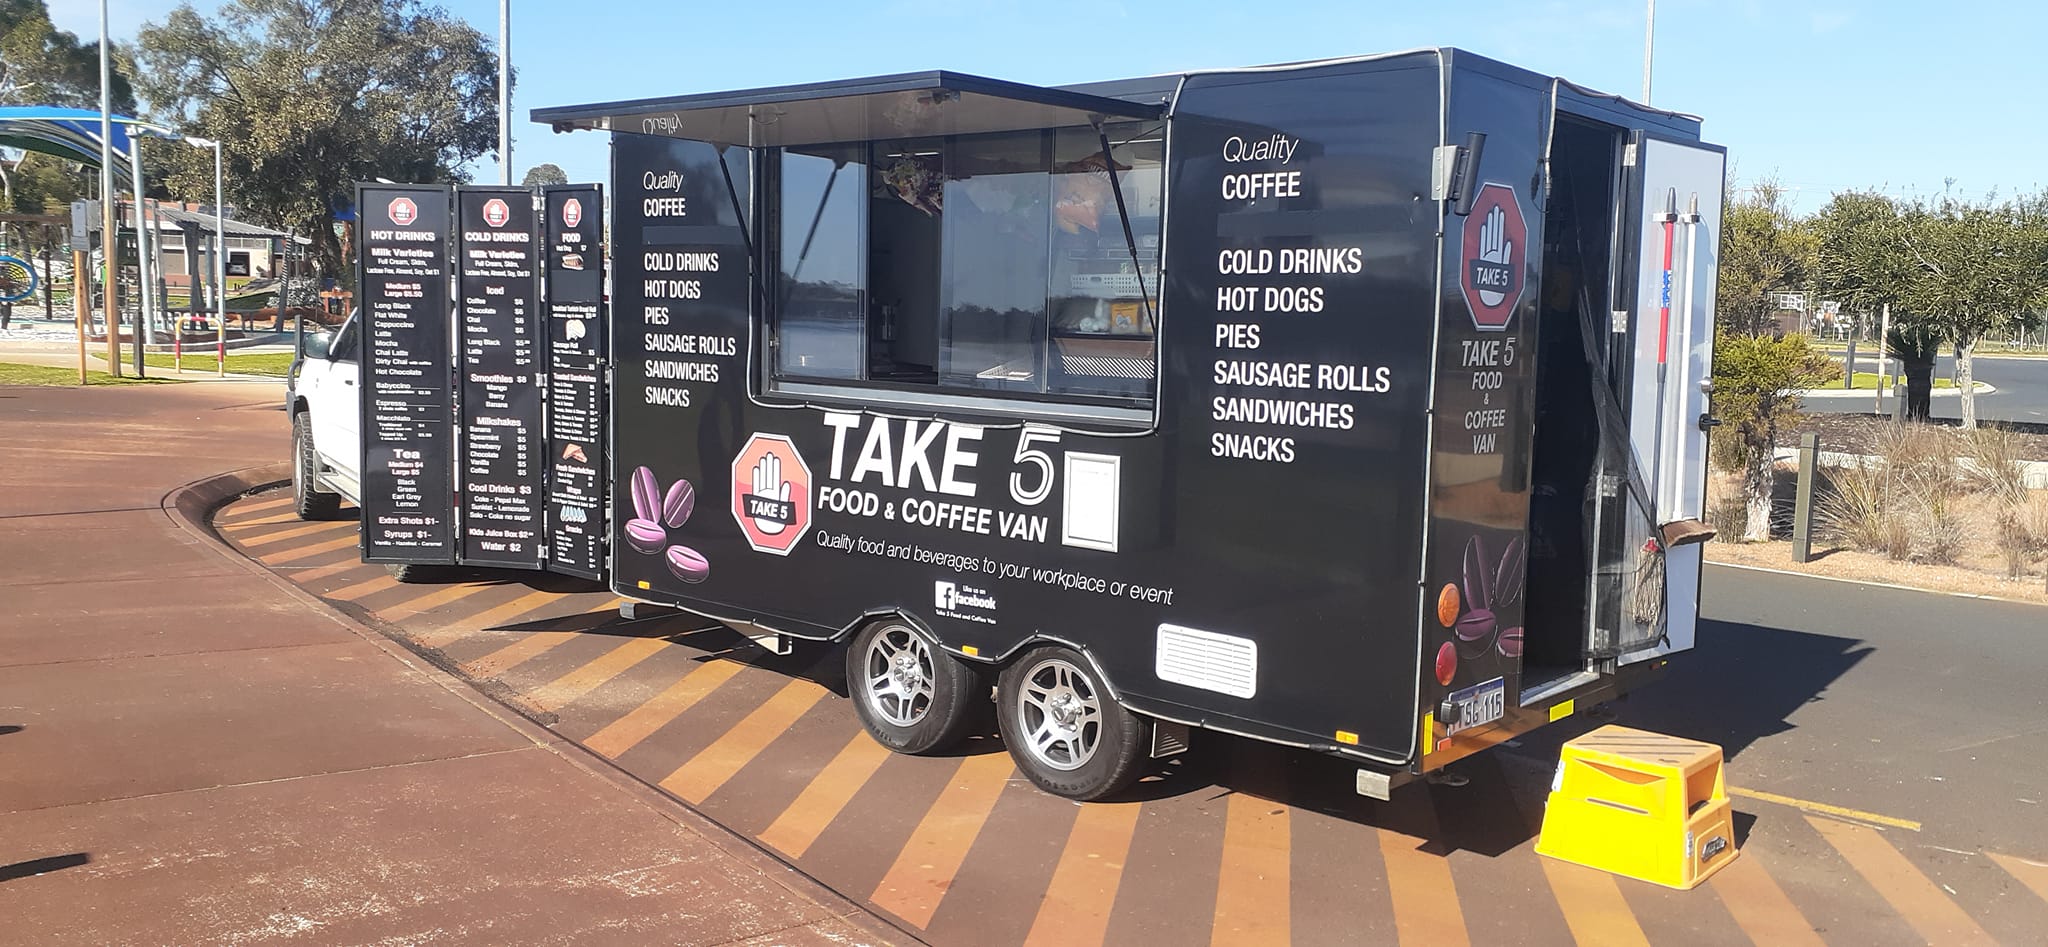 Take 5 Food and Coffee Van - Van